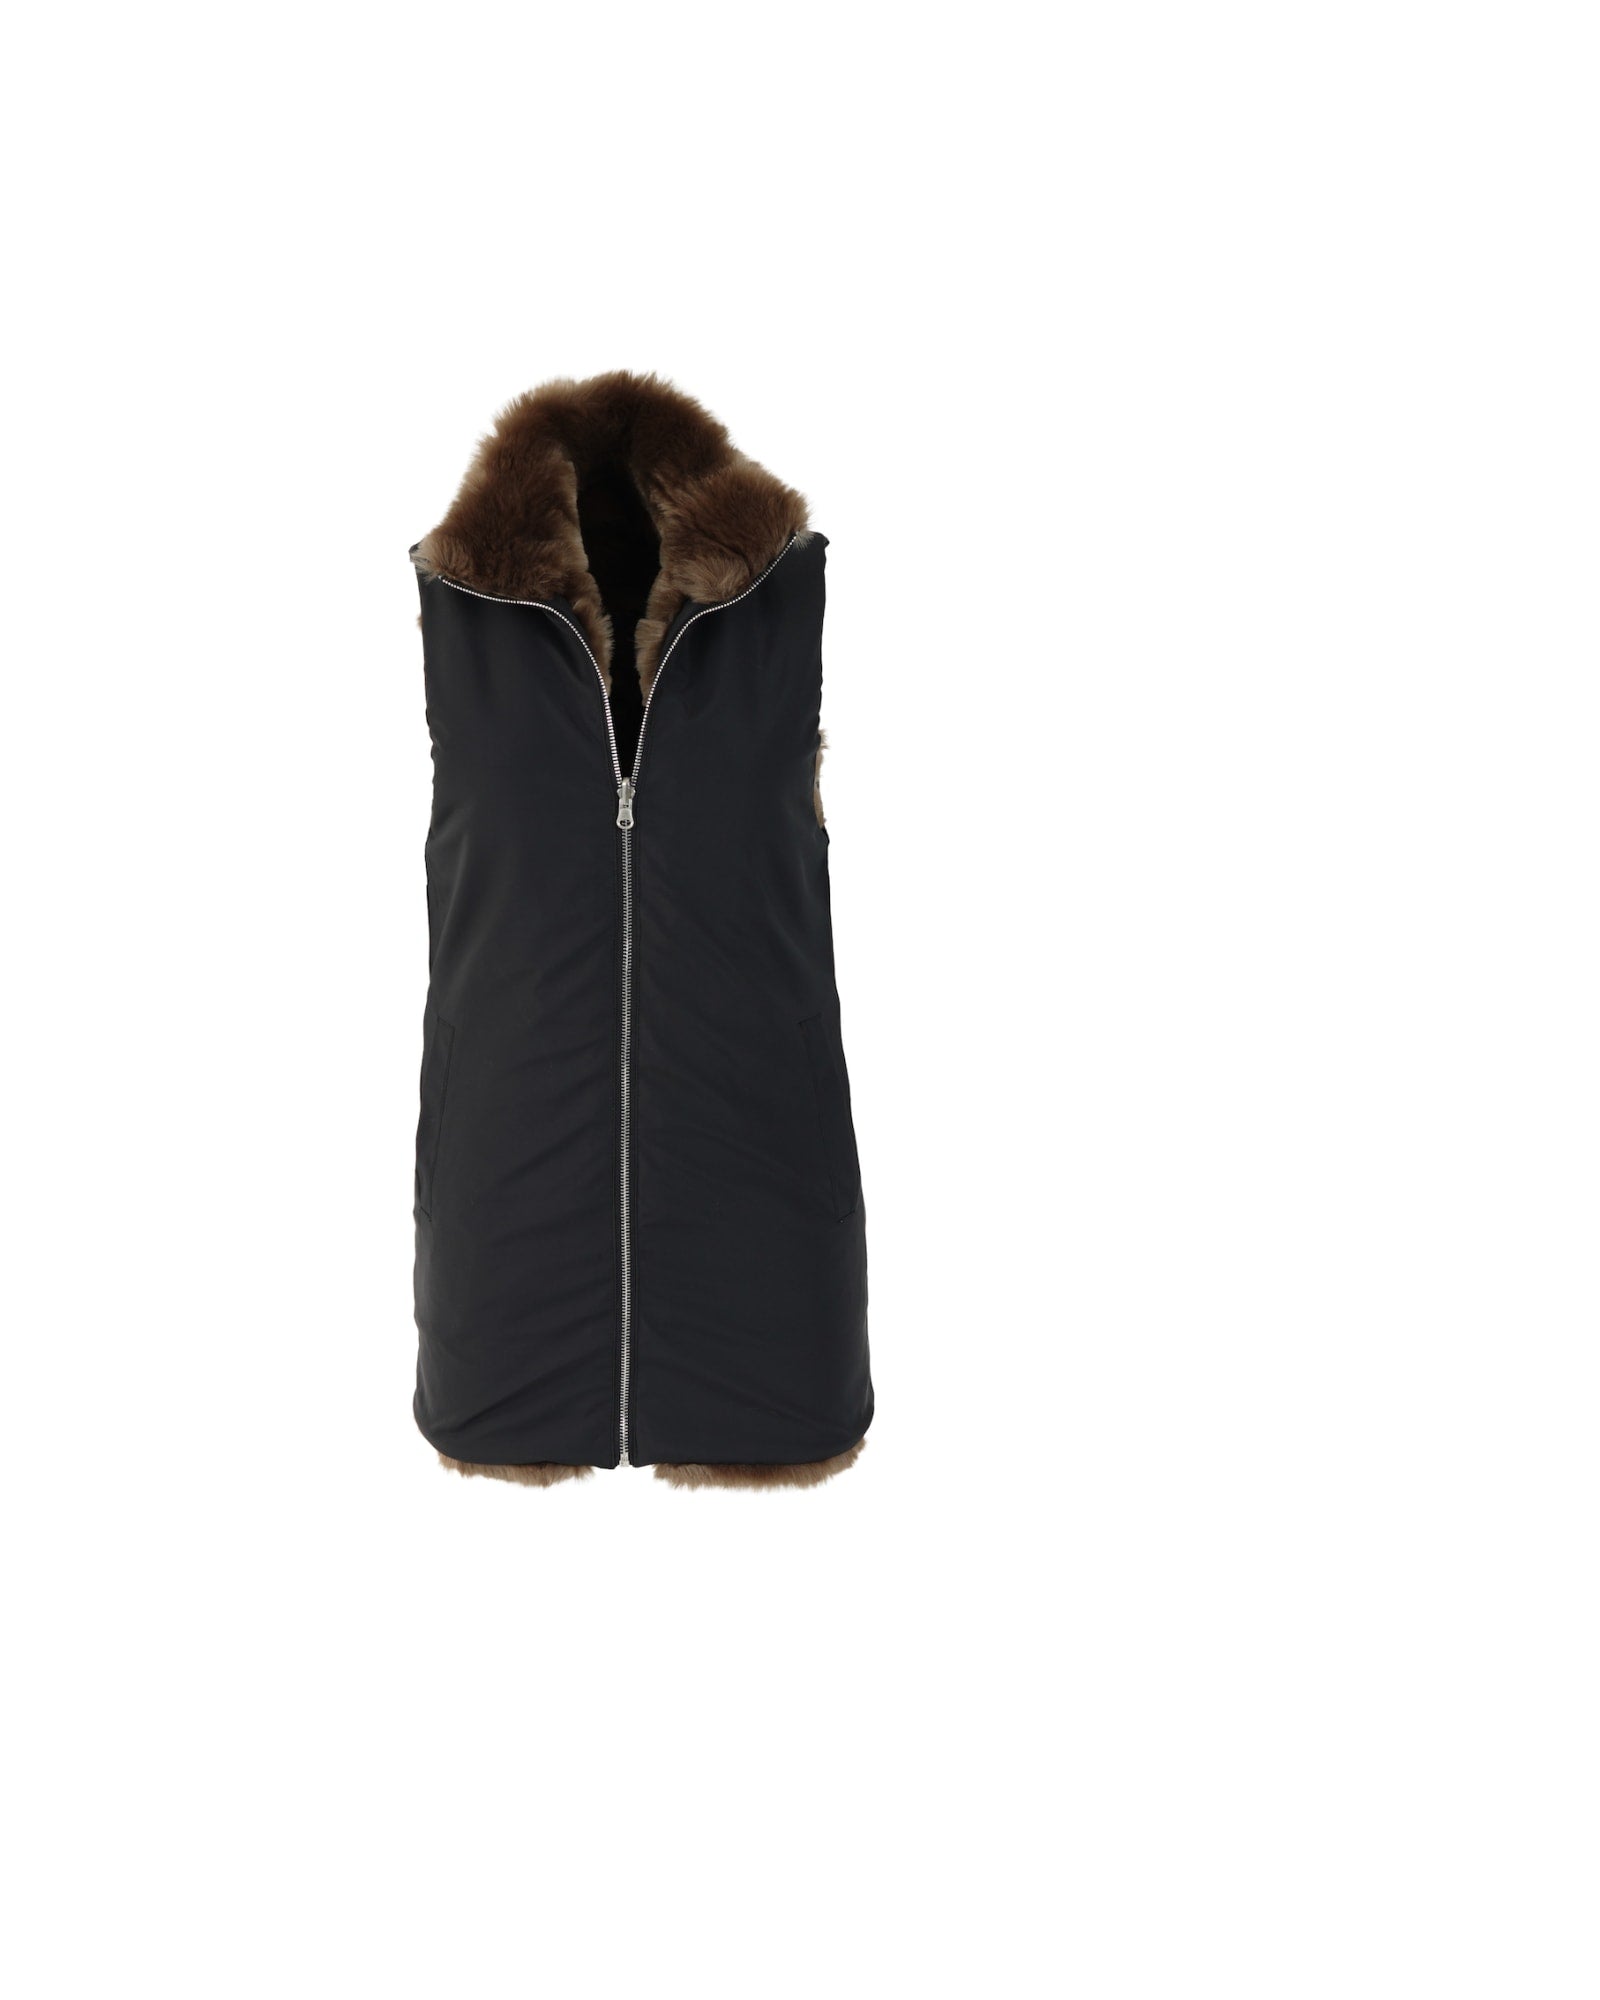 Reversible Zip Vest Black Mink | MOCHA MINK